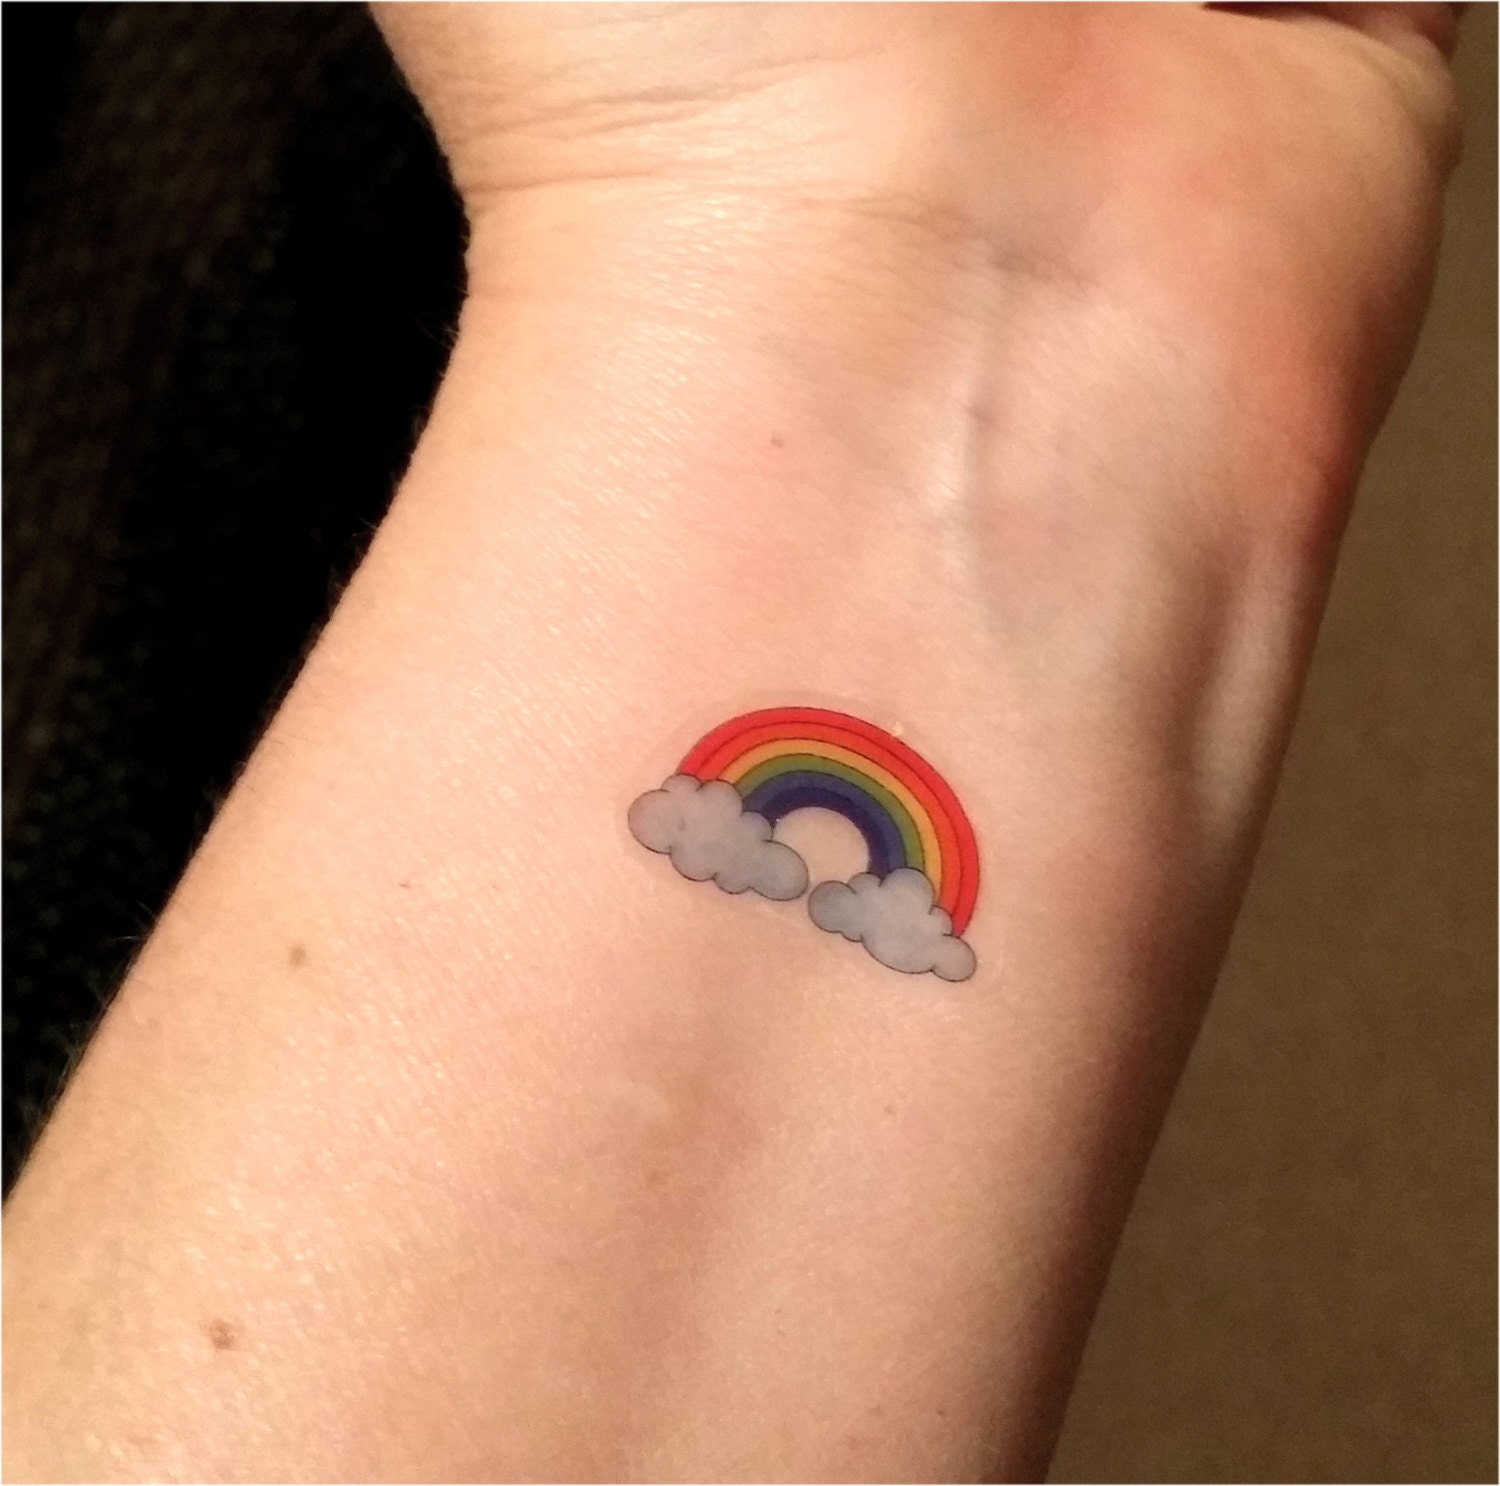 Tiny rainbow tattoo microtattoo tinytattoo tinytattooinspo finelin   TikTok